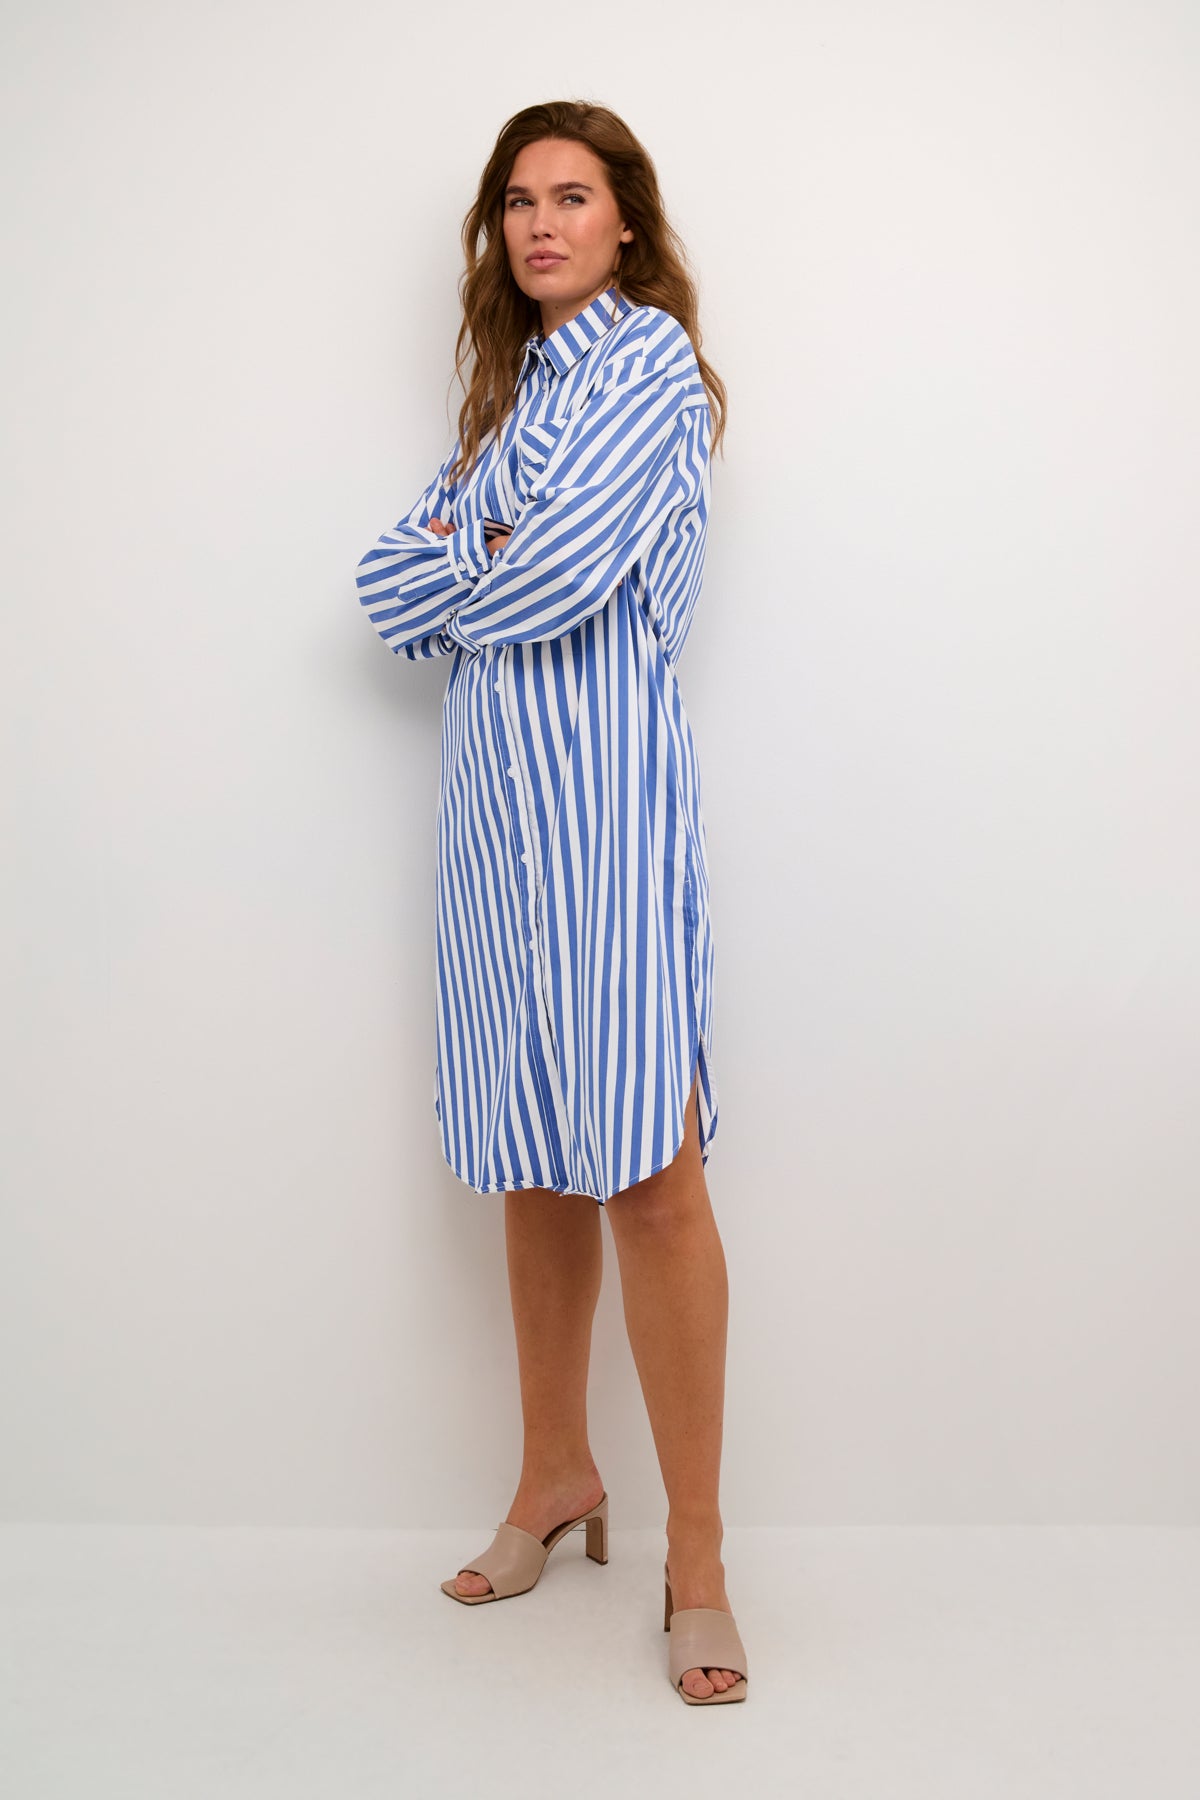 Regina Shirt Dress in Blue/White Stripe